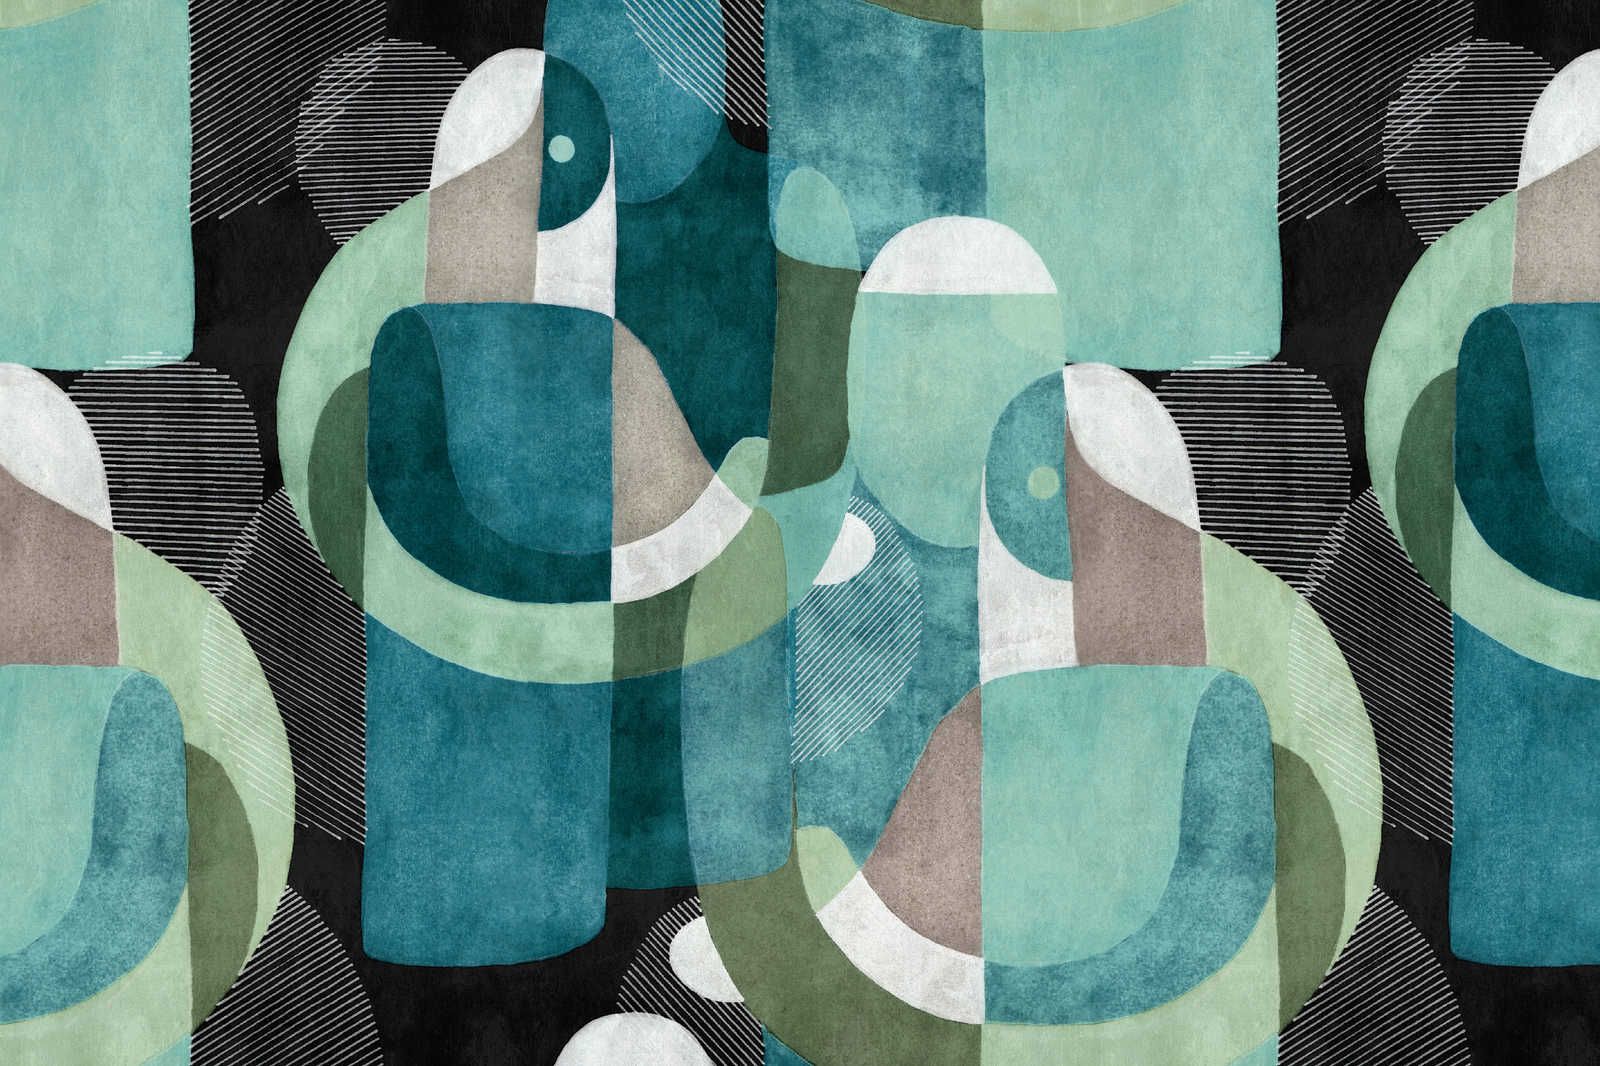             Meeting Place 1 - Canvas schilderij abstract etno design in zwart & groen - 0,90 m x 0,60 m
        